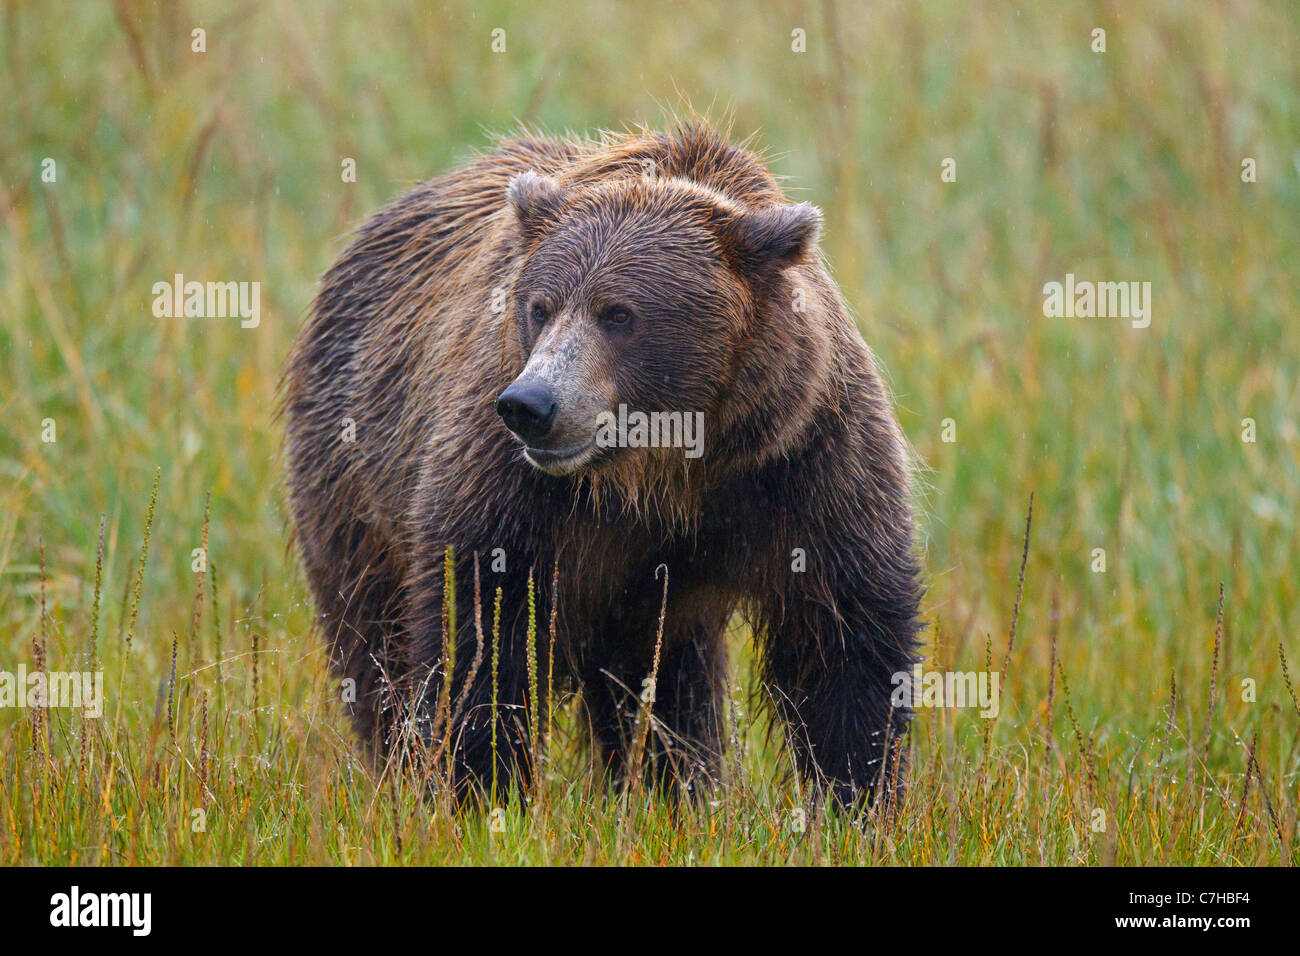 Nordamerikanischen Braunbären (Ursus Arctos Horribilis) Sau steht im Feld, Lake-Clark-Nationalpark, Alaska, Vereinigte Staaten von Amerika Stockfoto